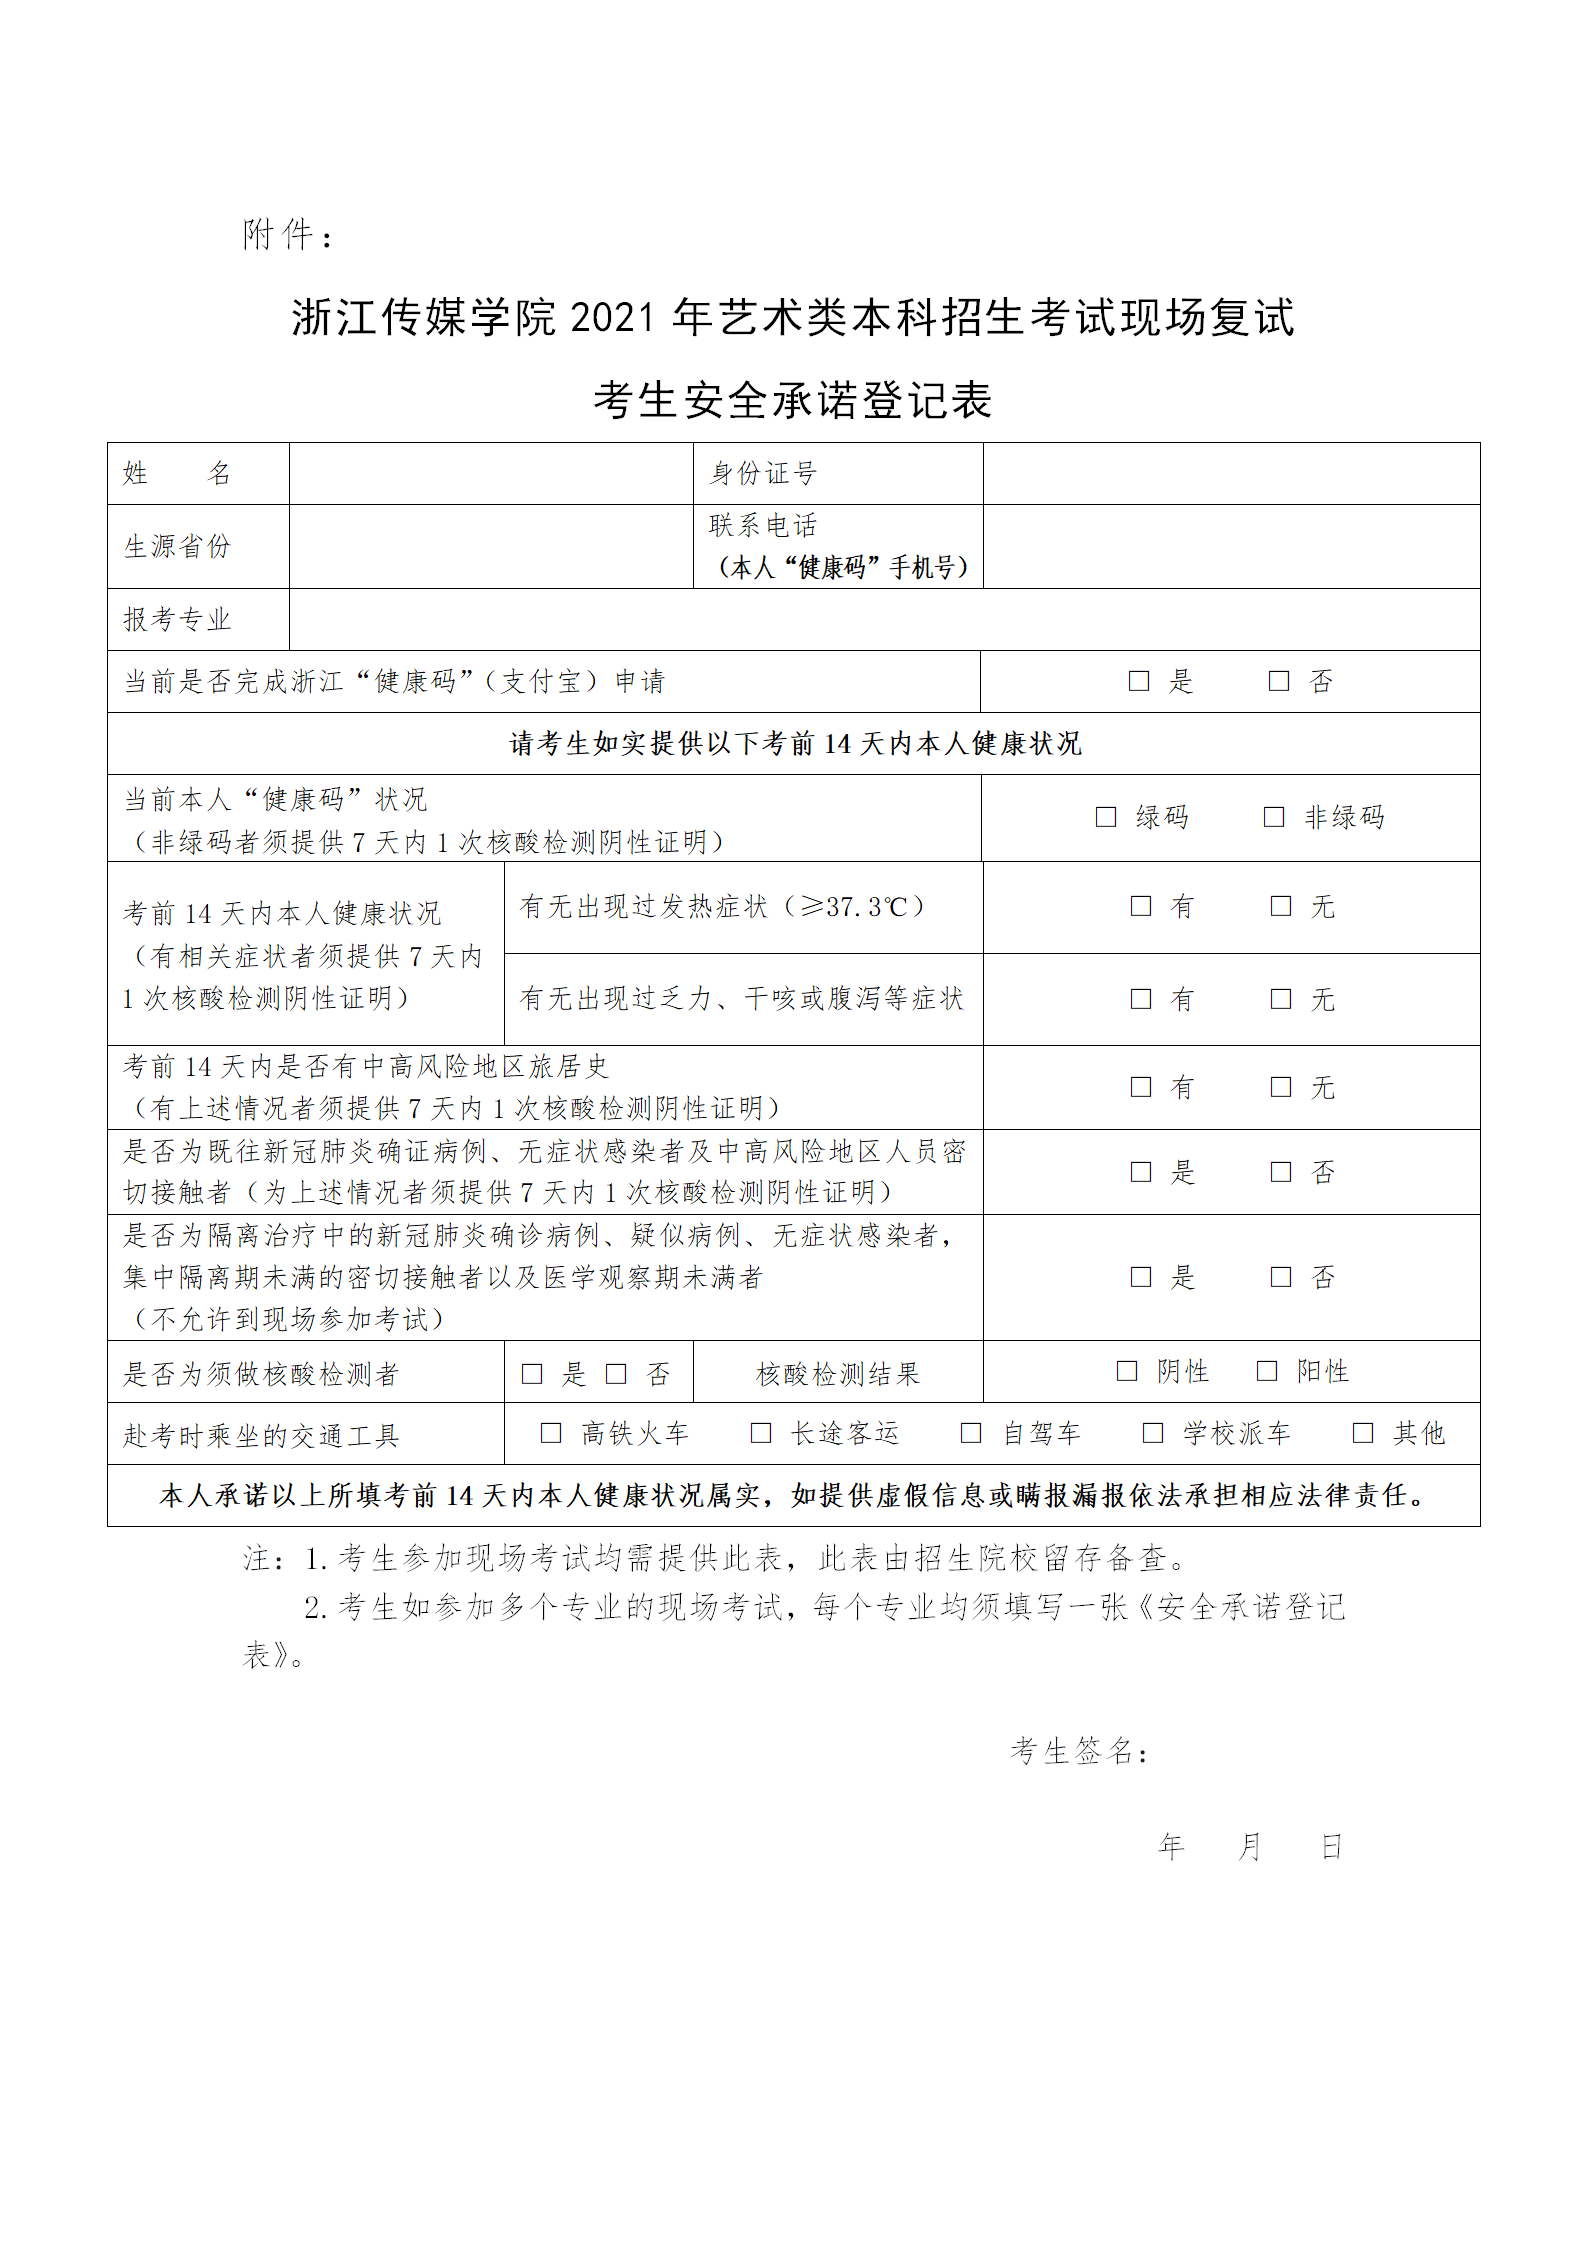 附件：浙江传媒学院2021年艺术类本科招生考试现场复试考生安全承诺登记表_01.png